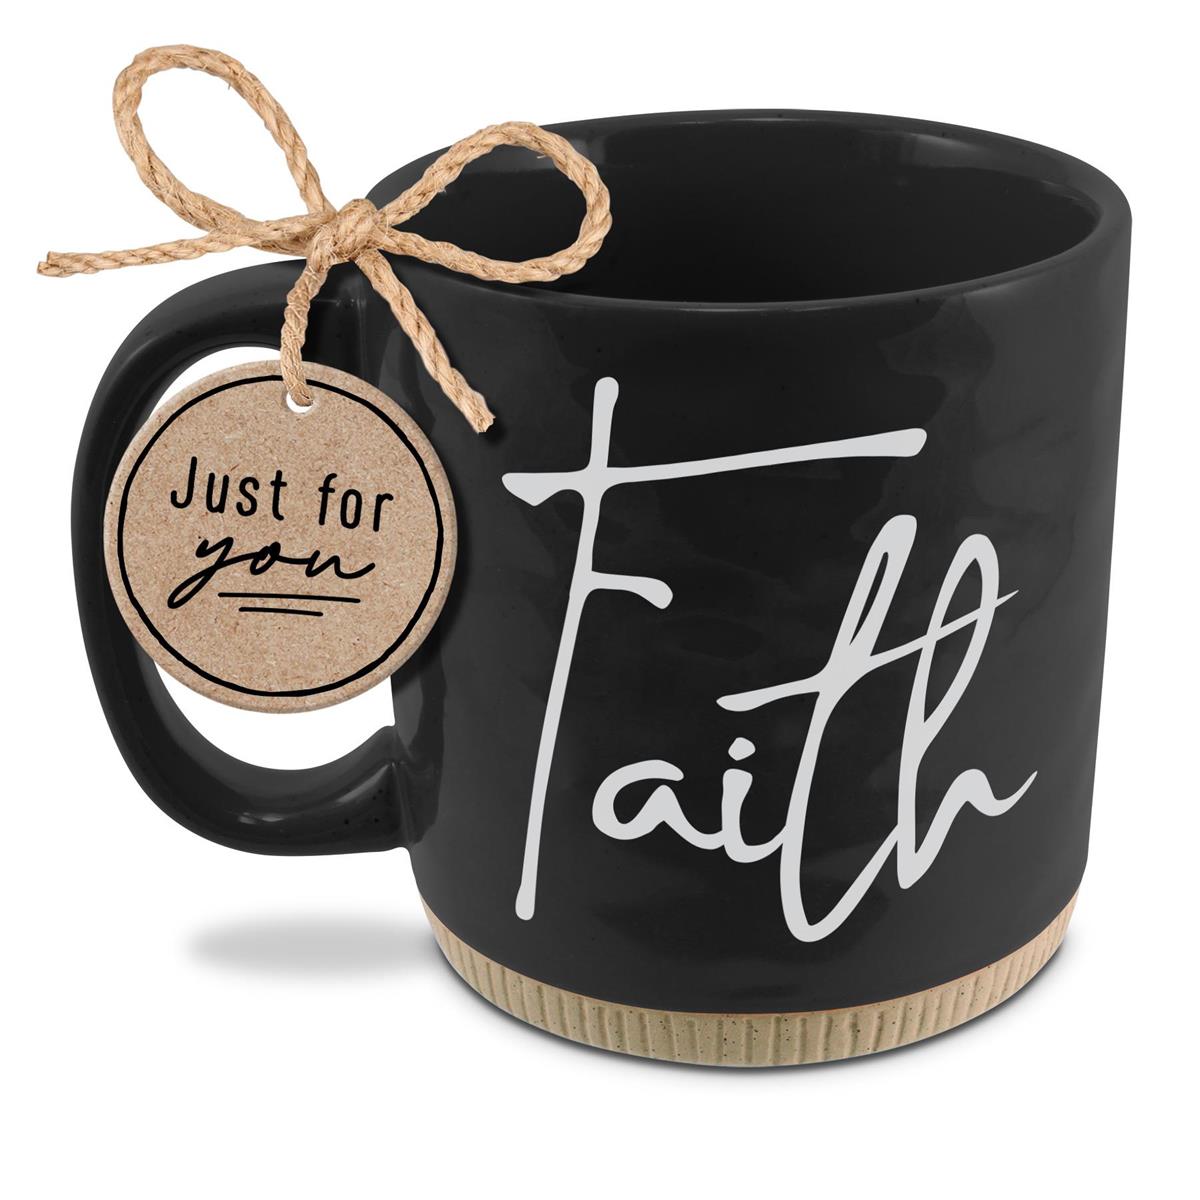 Faith Trust in the Lord Mug